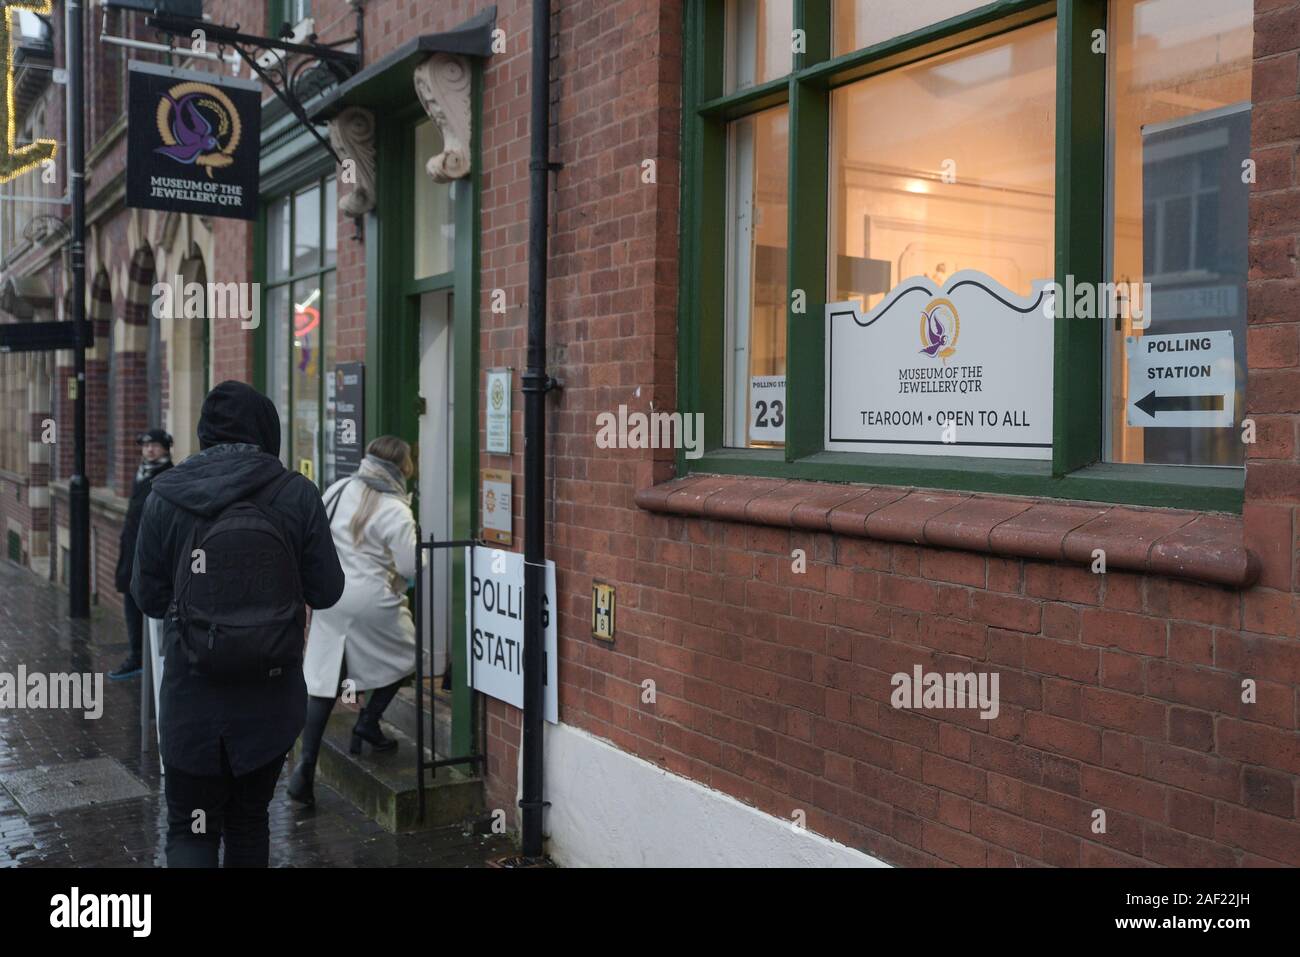 Birmingham, UK. 12 Décembre, 2019. Les électeurs entrez le musée de bijoux quater Hockley, Birmingham d'exprimer leur vote lors de l'élection générale 2019 comme la pluie est tombée. 12/12/2019 Pic prises. Maison De crédit : Sam/Alamy Live News Banque D'Images